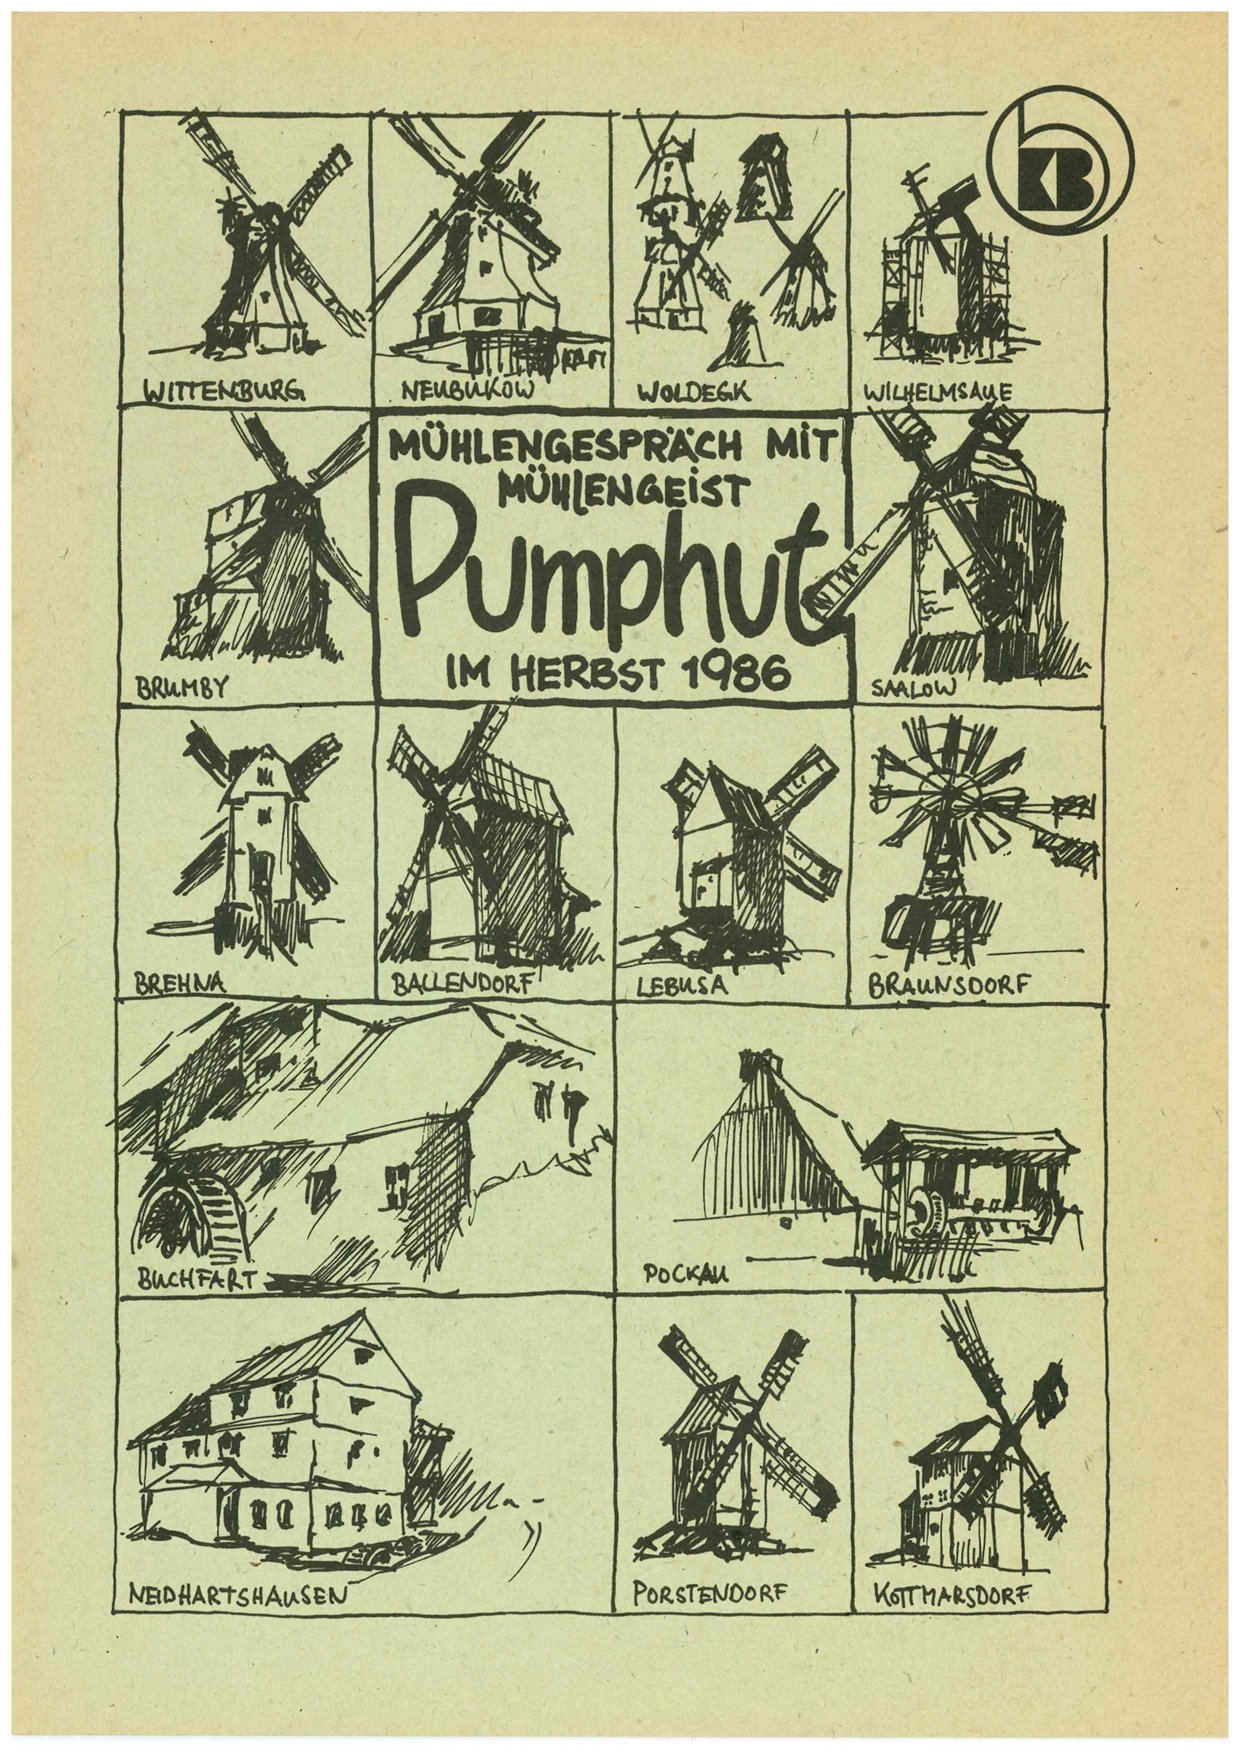 Mühlengespräch mit Mühlengeist Pumphut im Herbst 1986 (Historische Mühle von Sanssouci CC BY-NC-SA)